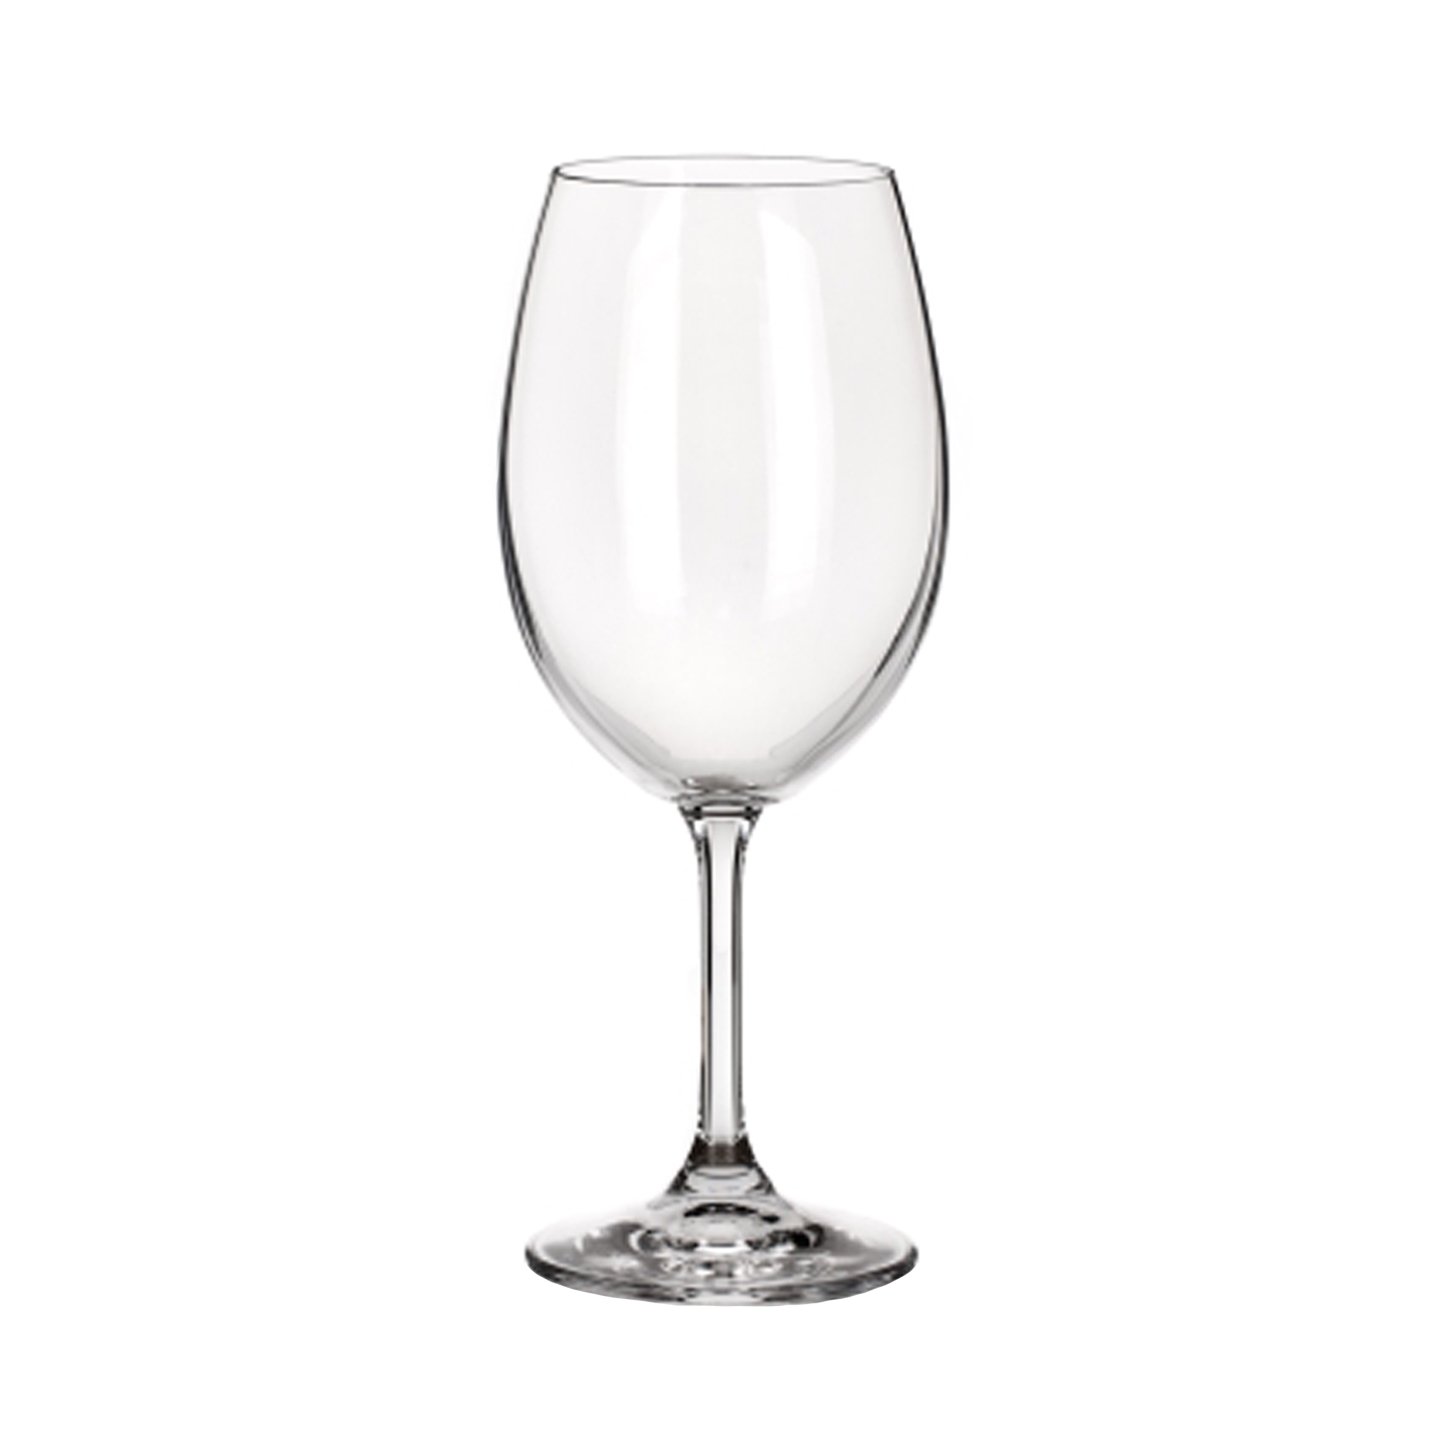 Pahar pentru vin, sticlă cristalină, 580 ml Carrefour